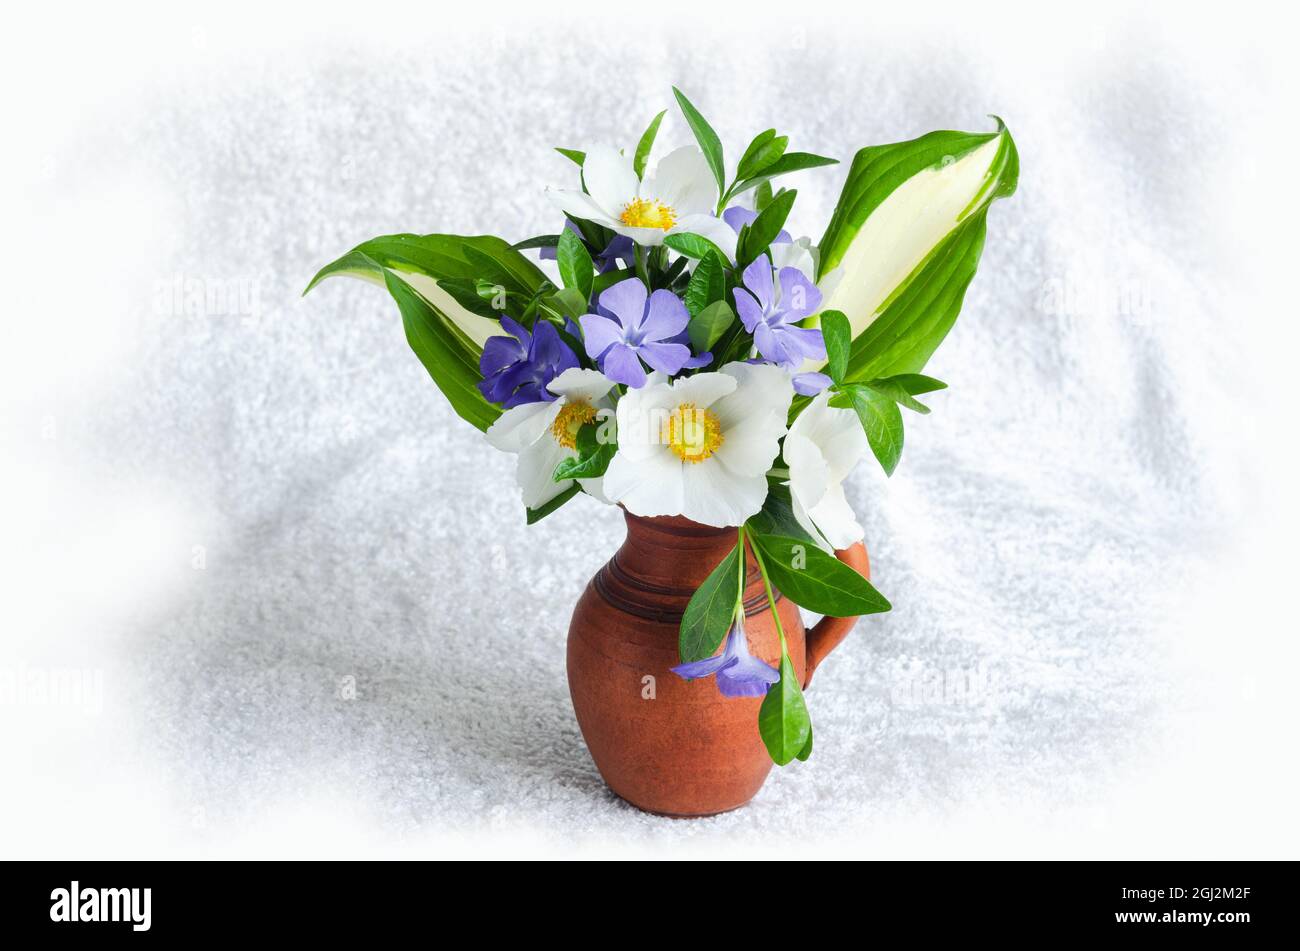 Un petit bouquet de fleurs printanières dans un vase en argile sur fond clair Banque D'Images